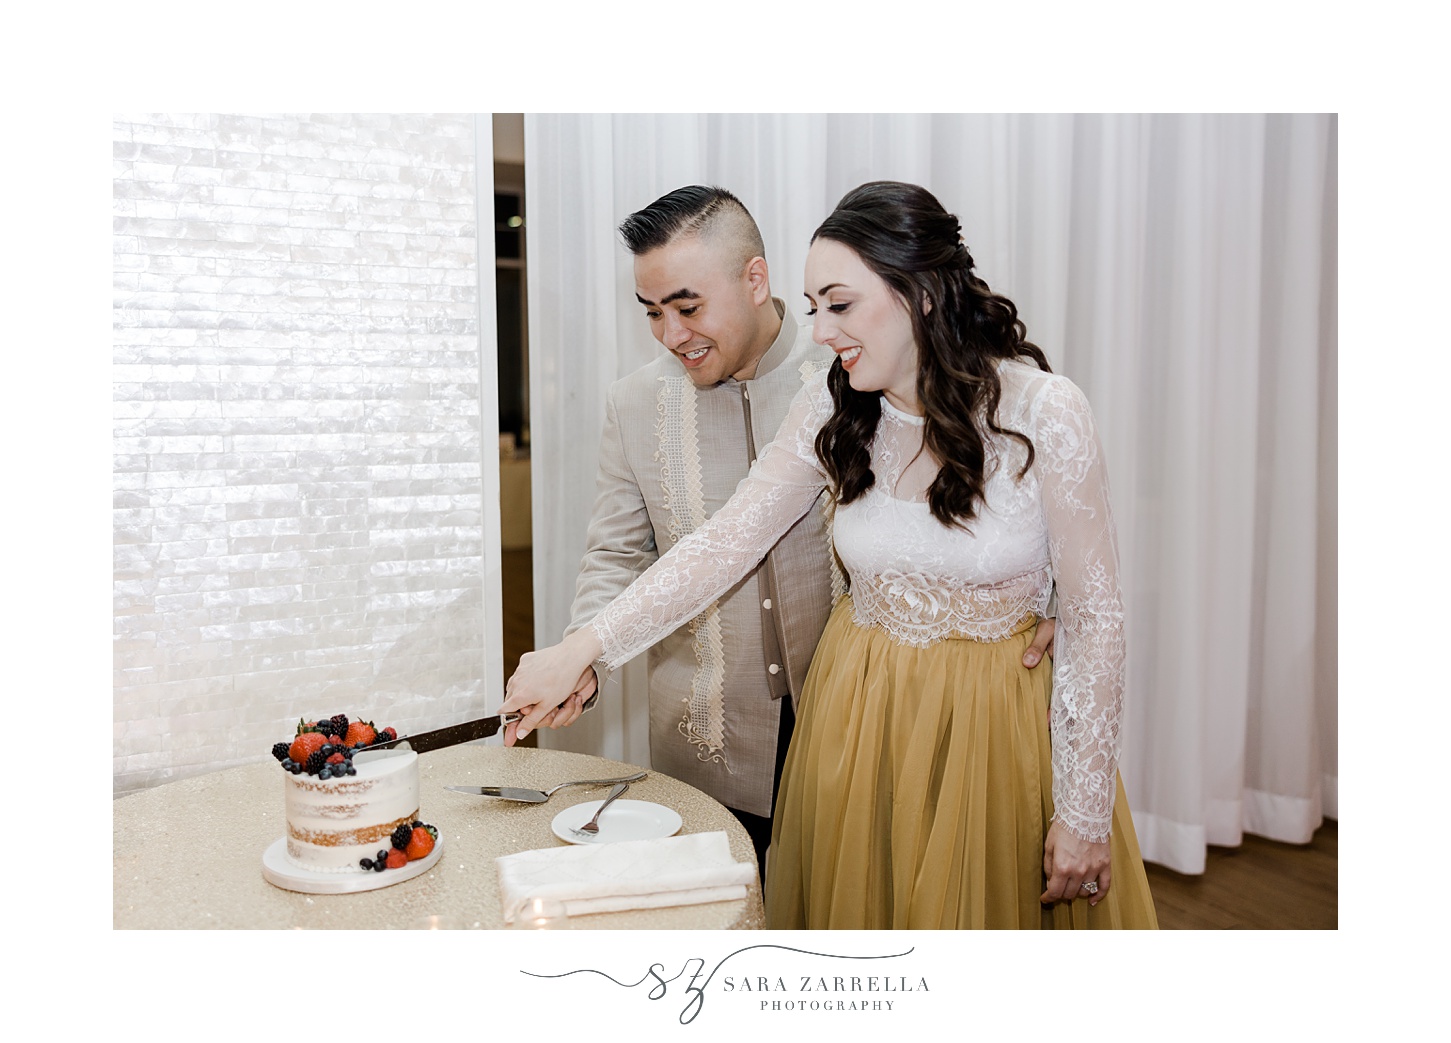 newlyweds cut small cake during Rhode Island wedding reception 